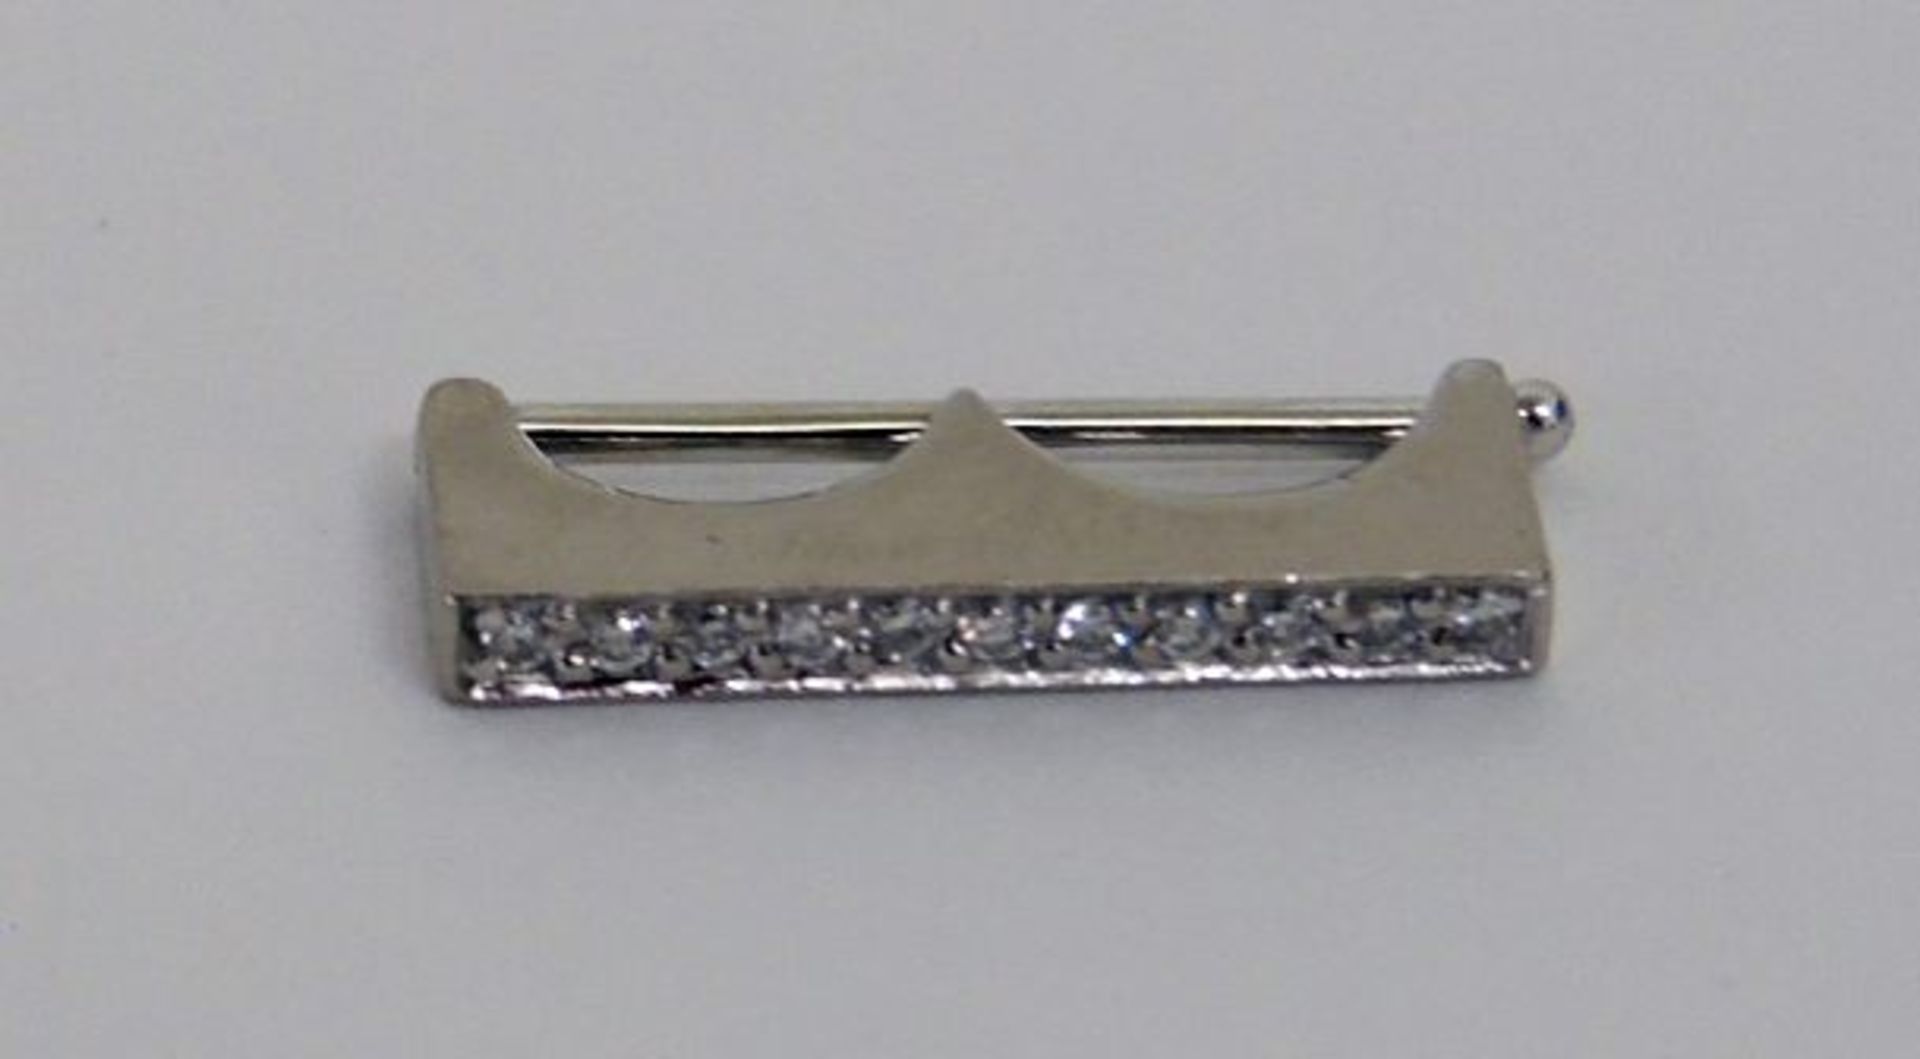 KettenrafferWG, 750. Besetzt mit einer Reihe von kleinen Brillanten. 1,7 cm x 0,2 cm. 2,1 g.